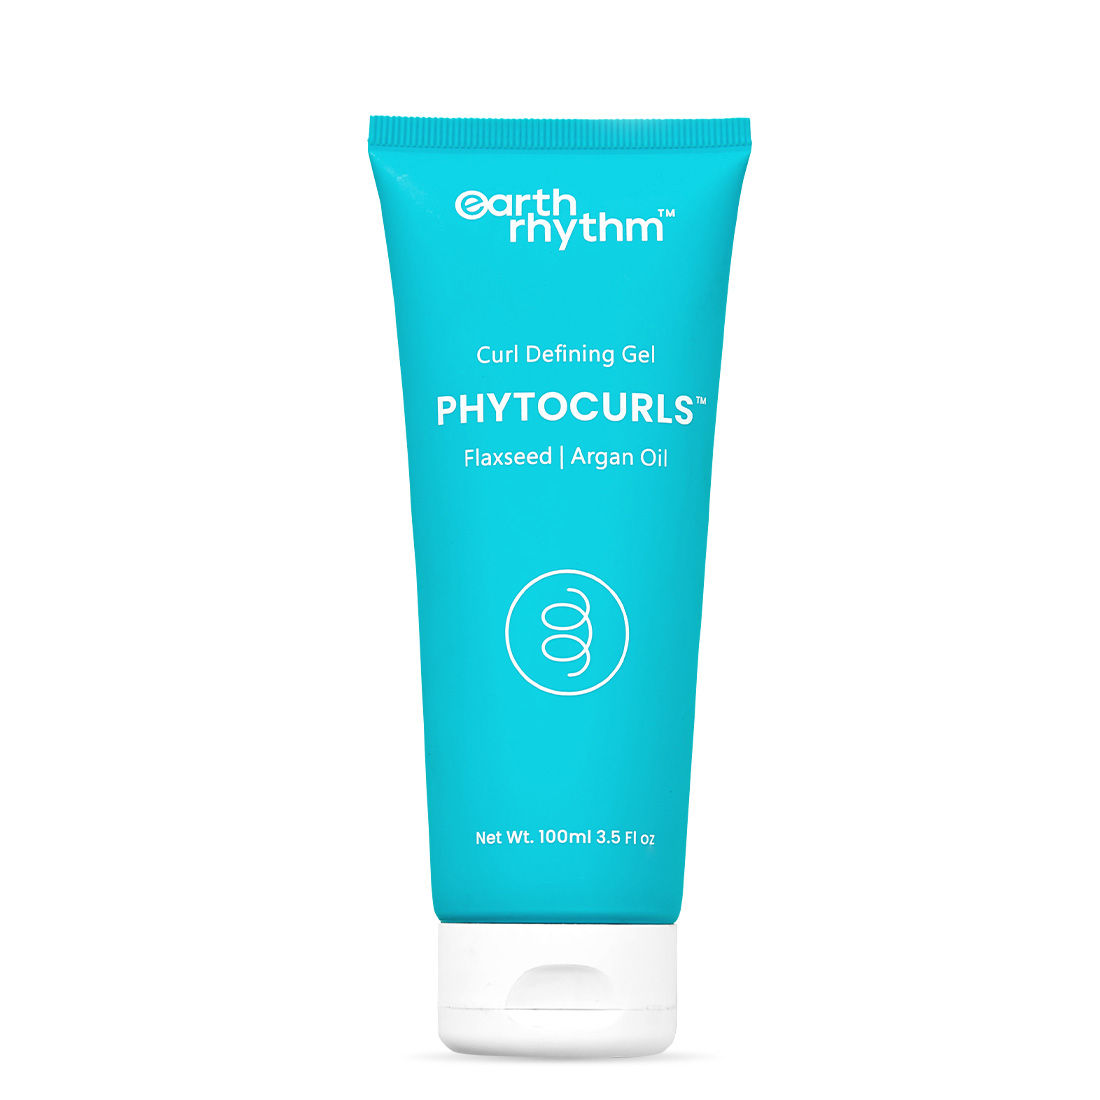 Buy Earth Rhythm Phytocurls - Curl Defining Gel | Flaxseed | Argan Oil - 100 ML - Purplle